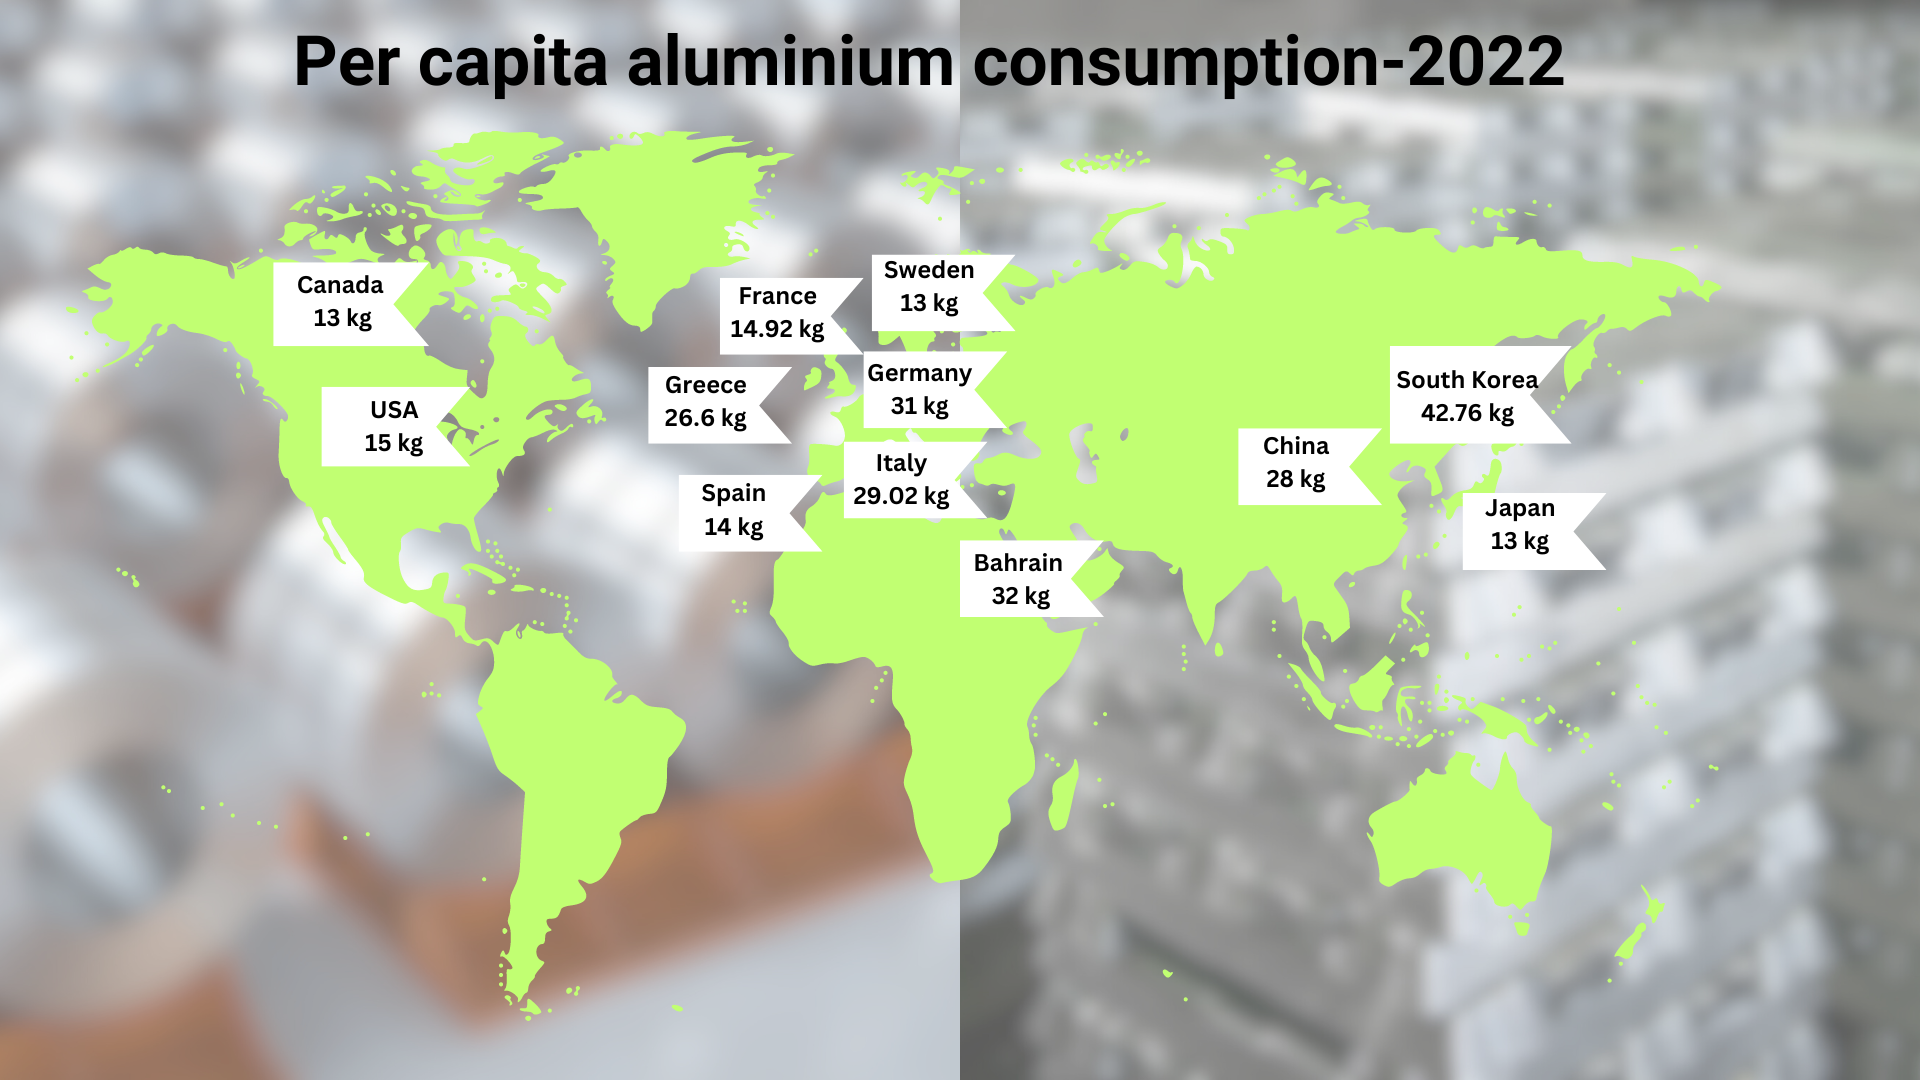 2022 per capita aluminium consumption: Ranking the world's top 10